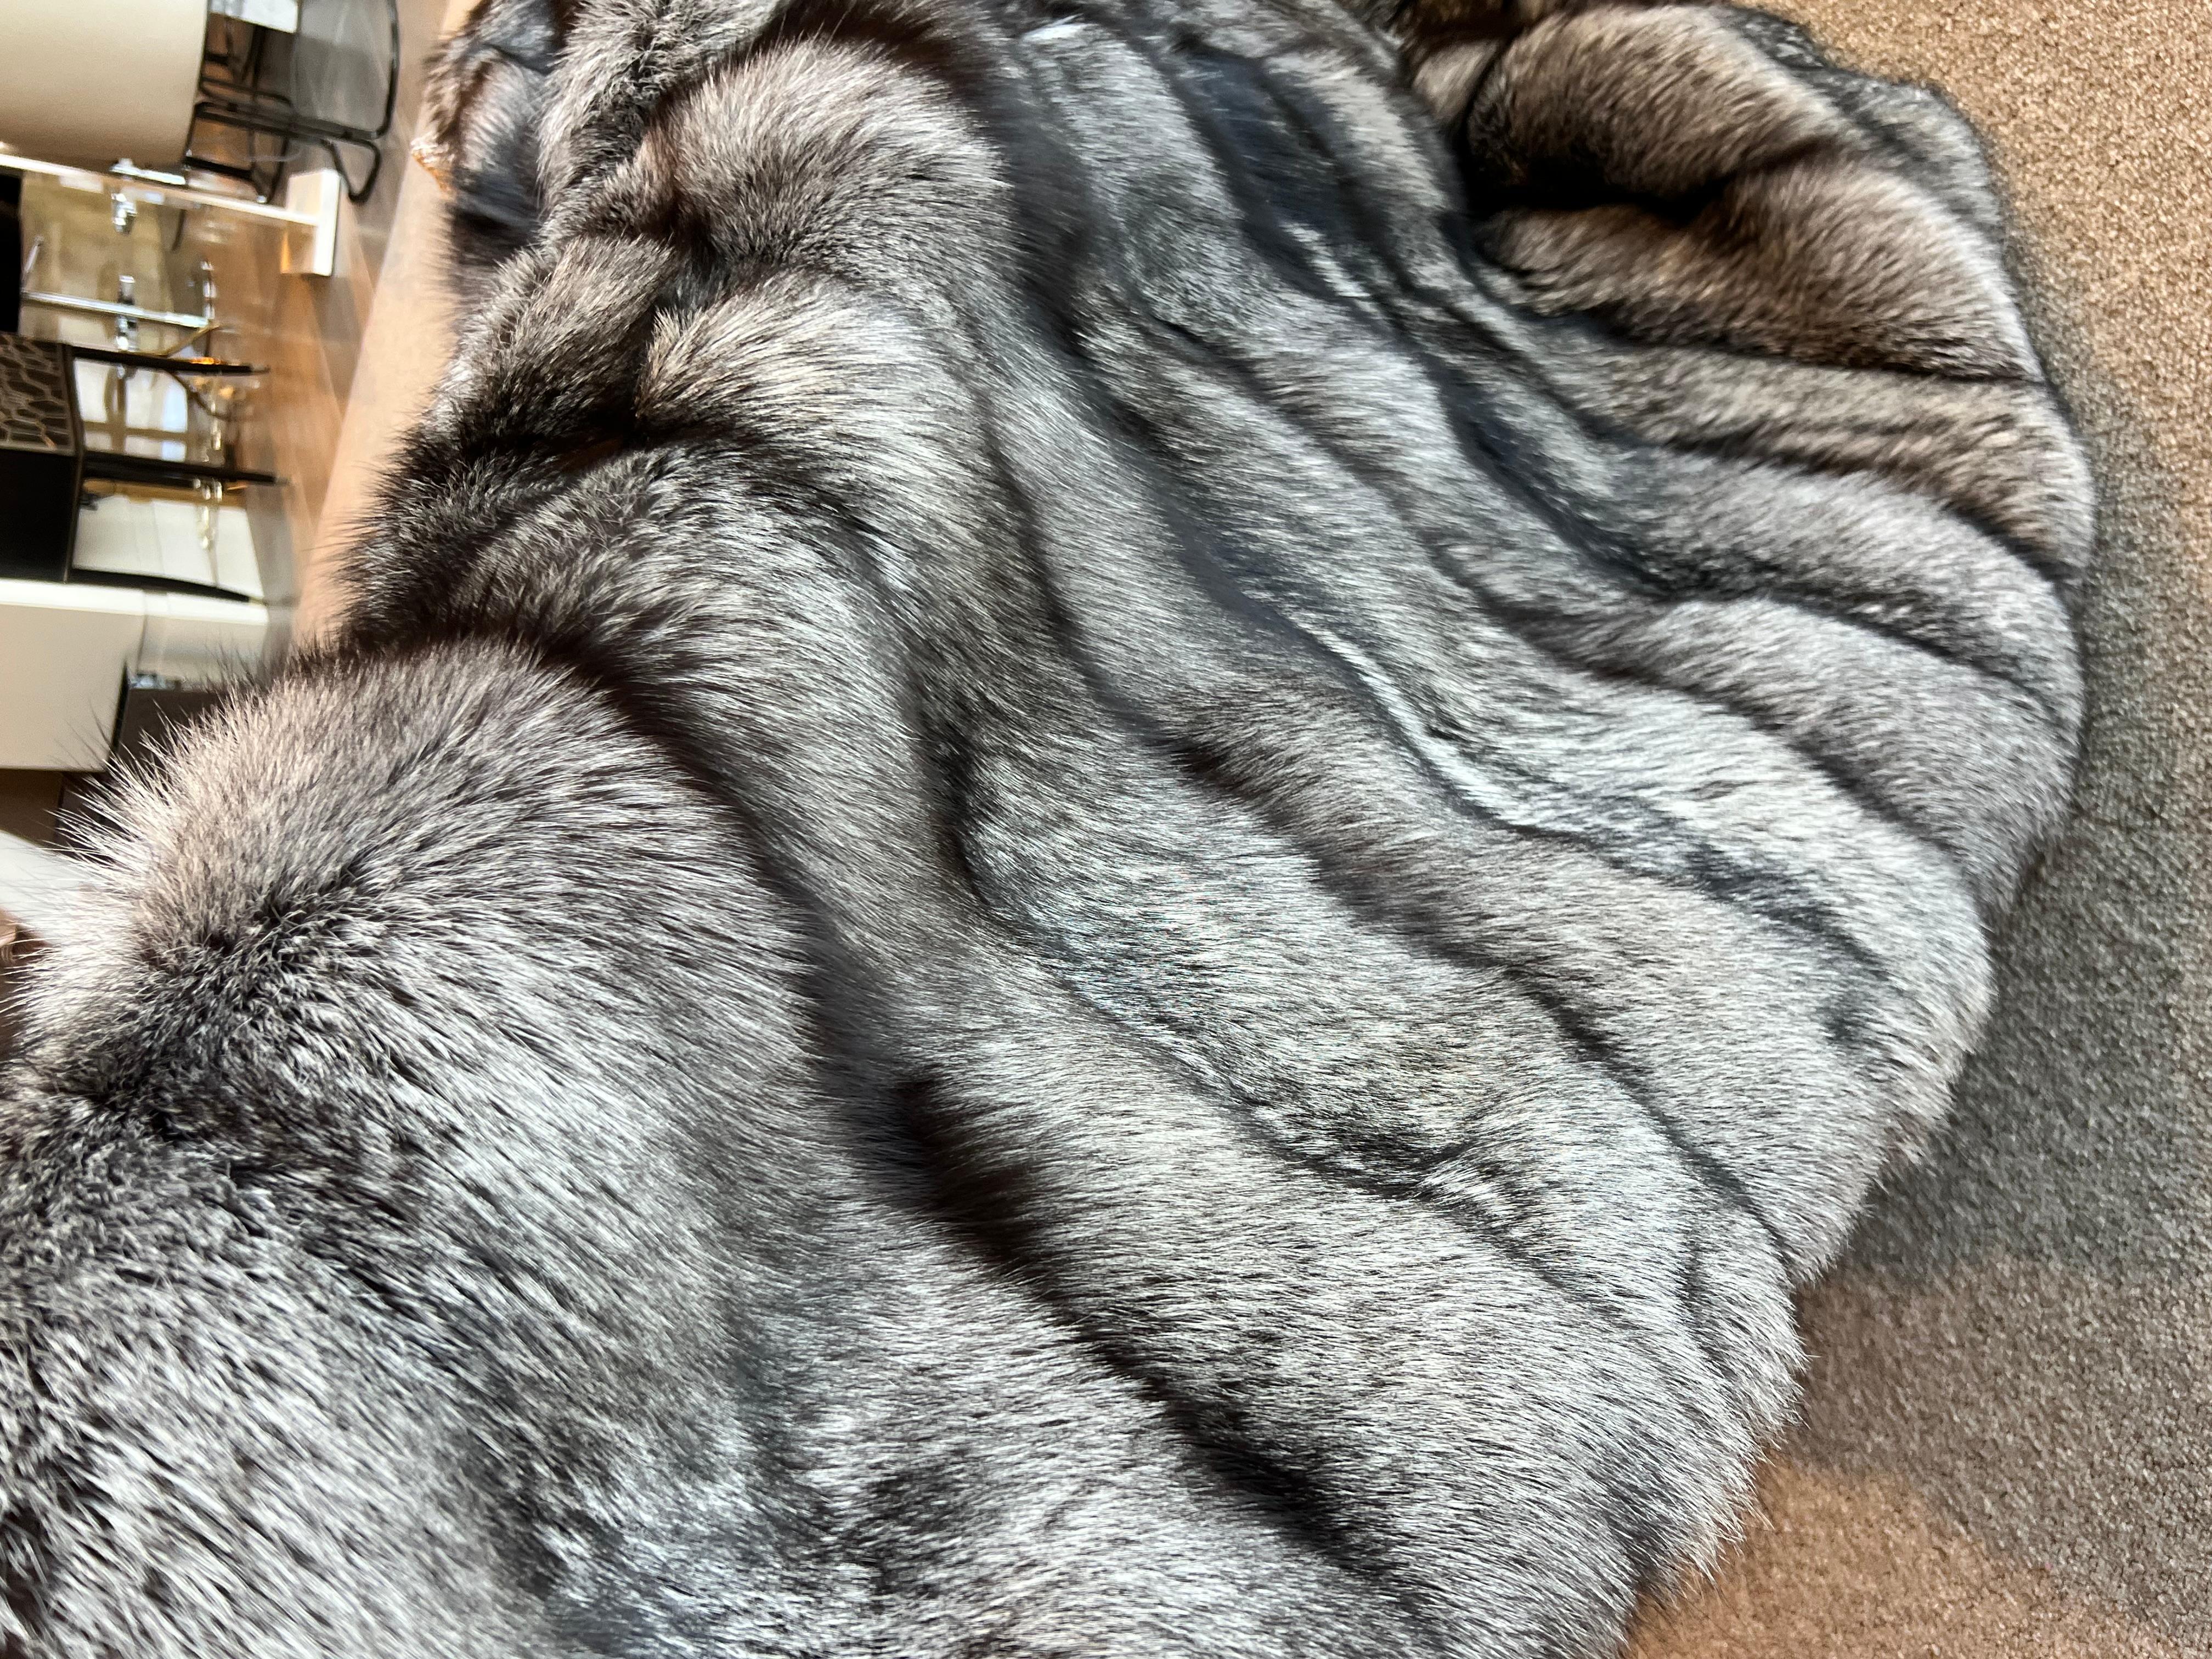 Diese große, mit Seide gefütterte Silberfuchsdecke ist aus den feinsten, dichten kanadischen Fuchspelzen hergestellt.
Das Seidenfutter sorgt für eine weiche, glatte Unterlage, die sich angenehm an den Körper anschmiegt.
Diese Größe eignet sich